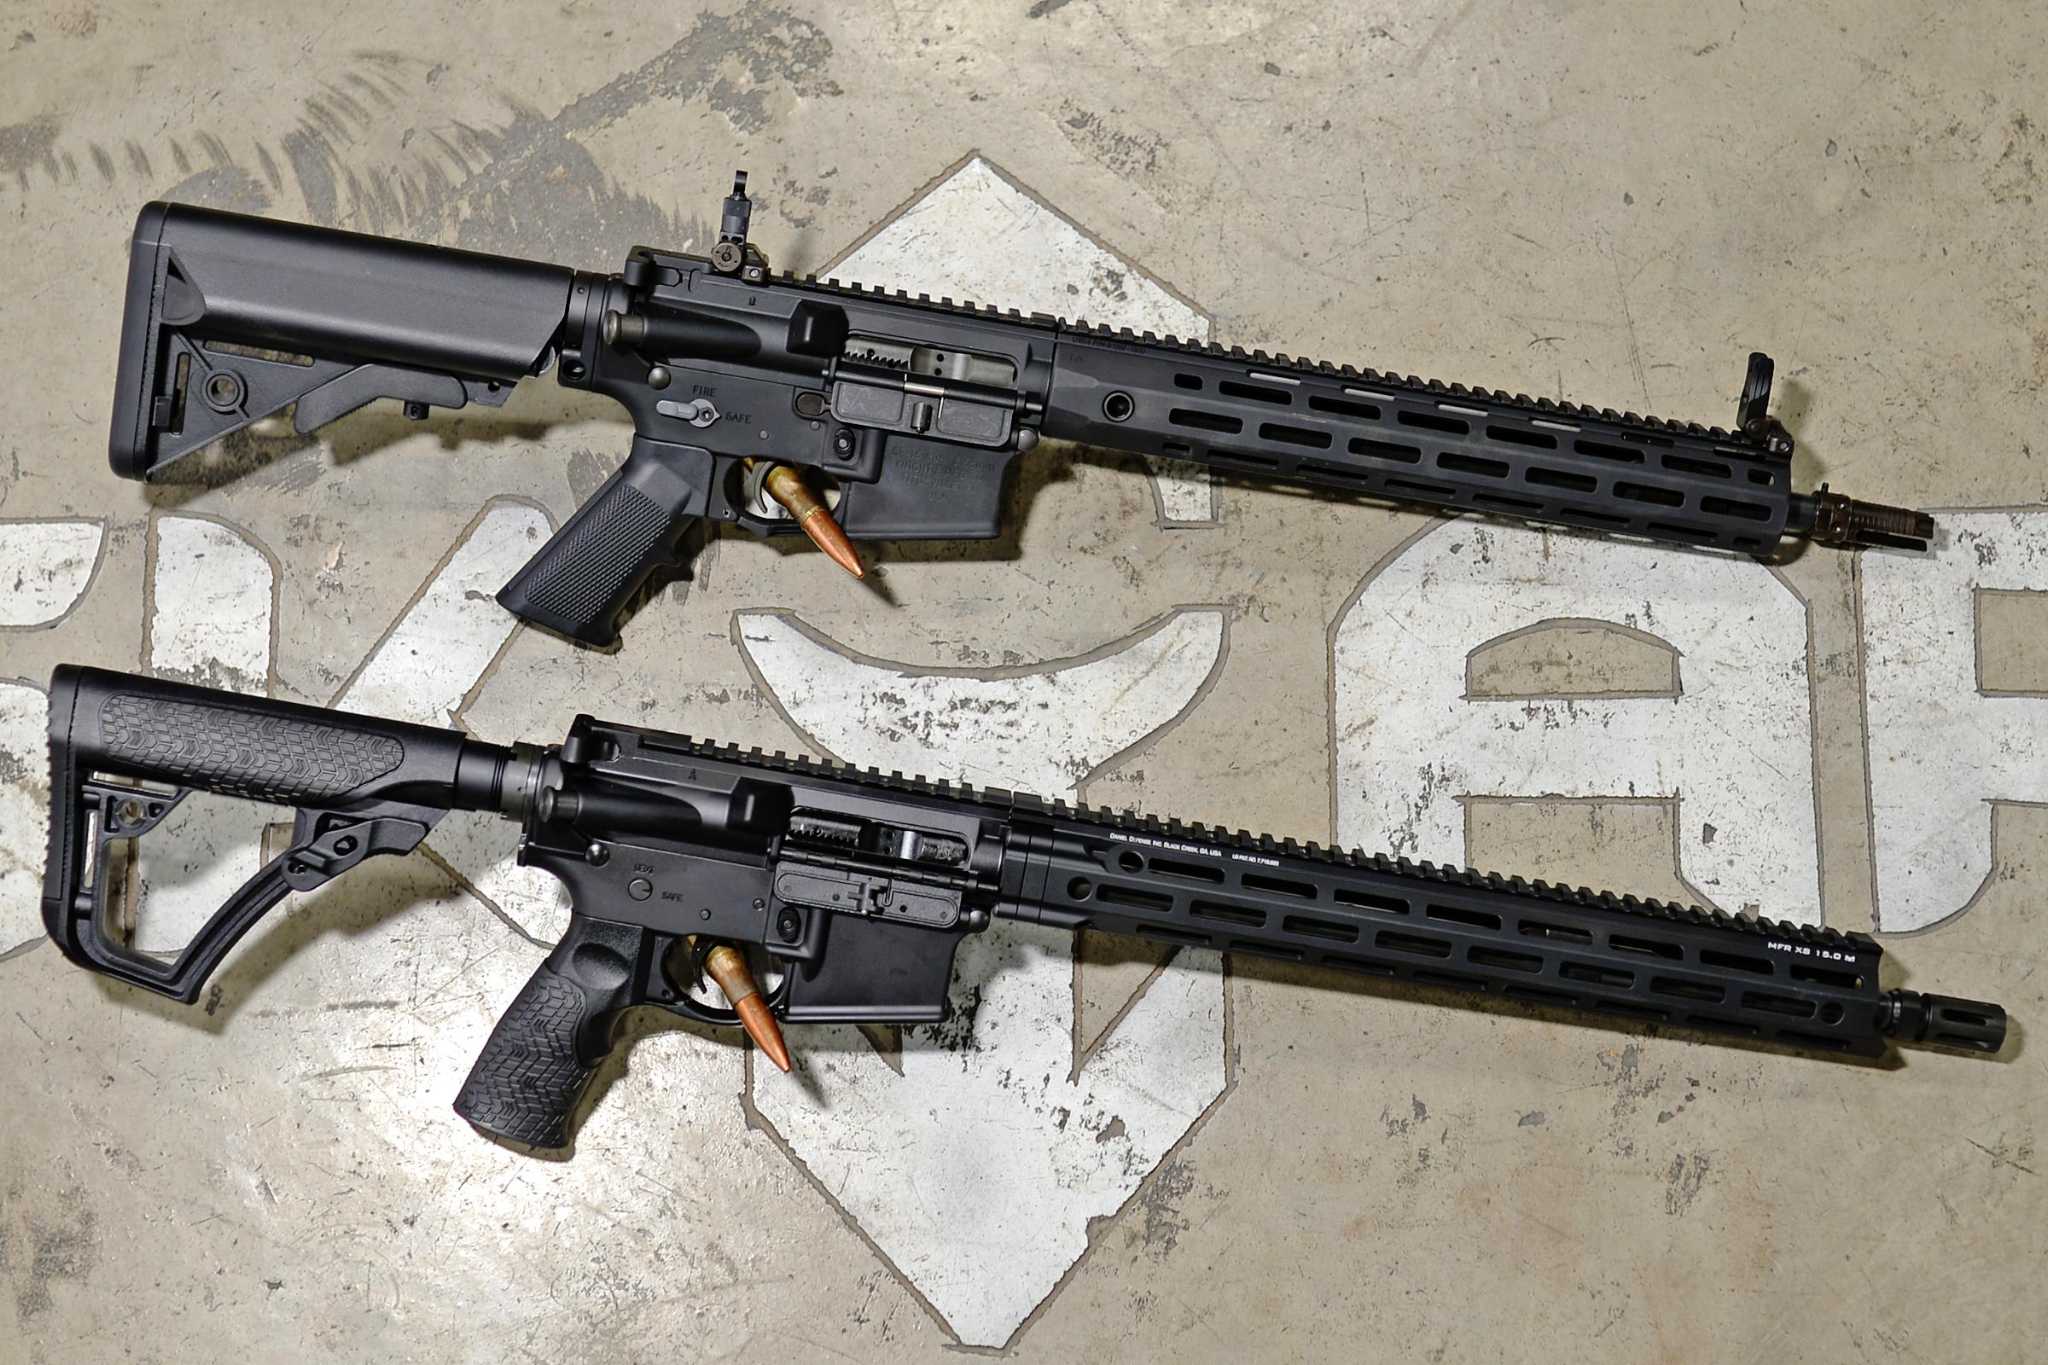 He has a battle rifle”: Police feared Uvalde gunman's AR-15